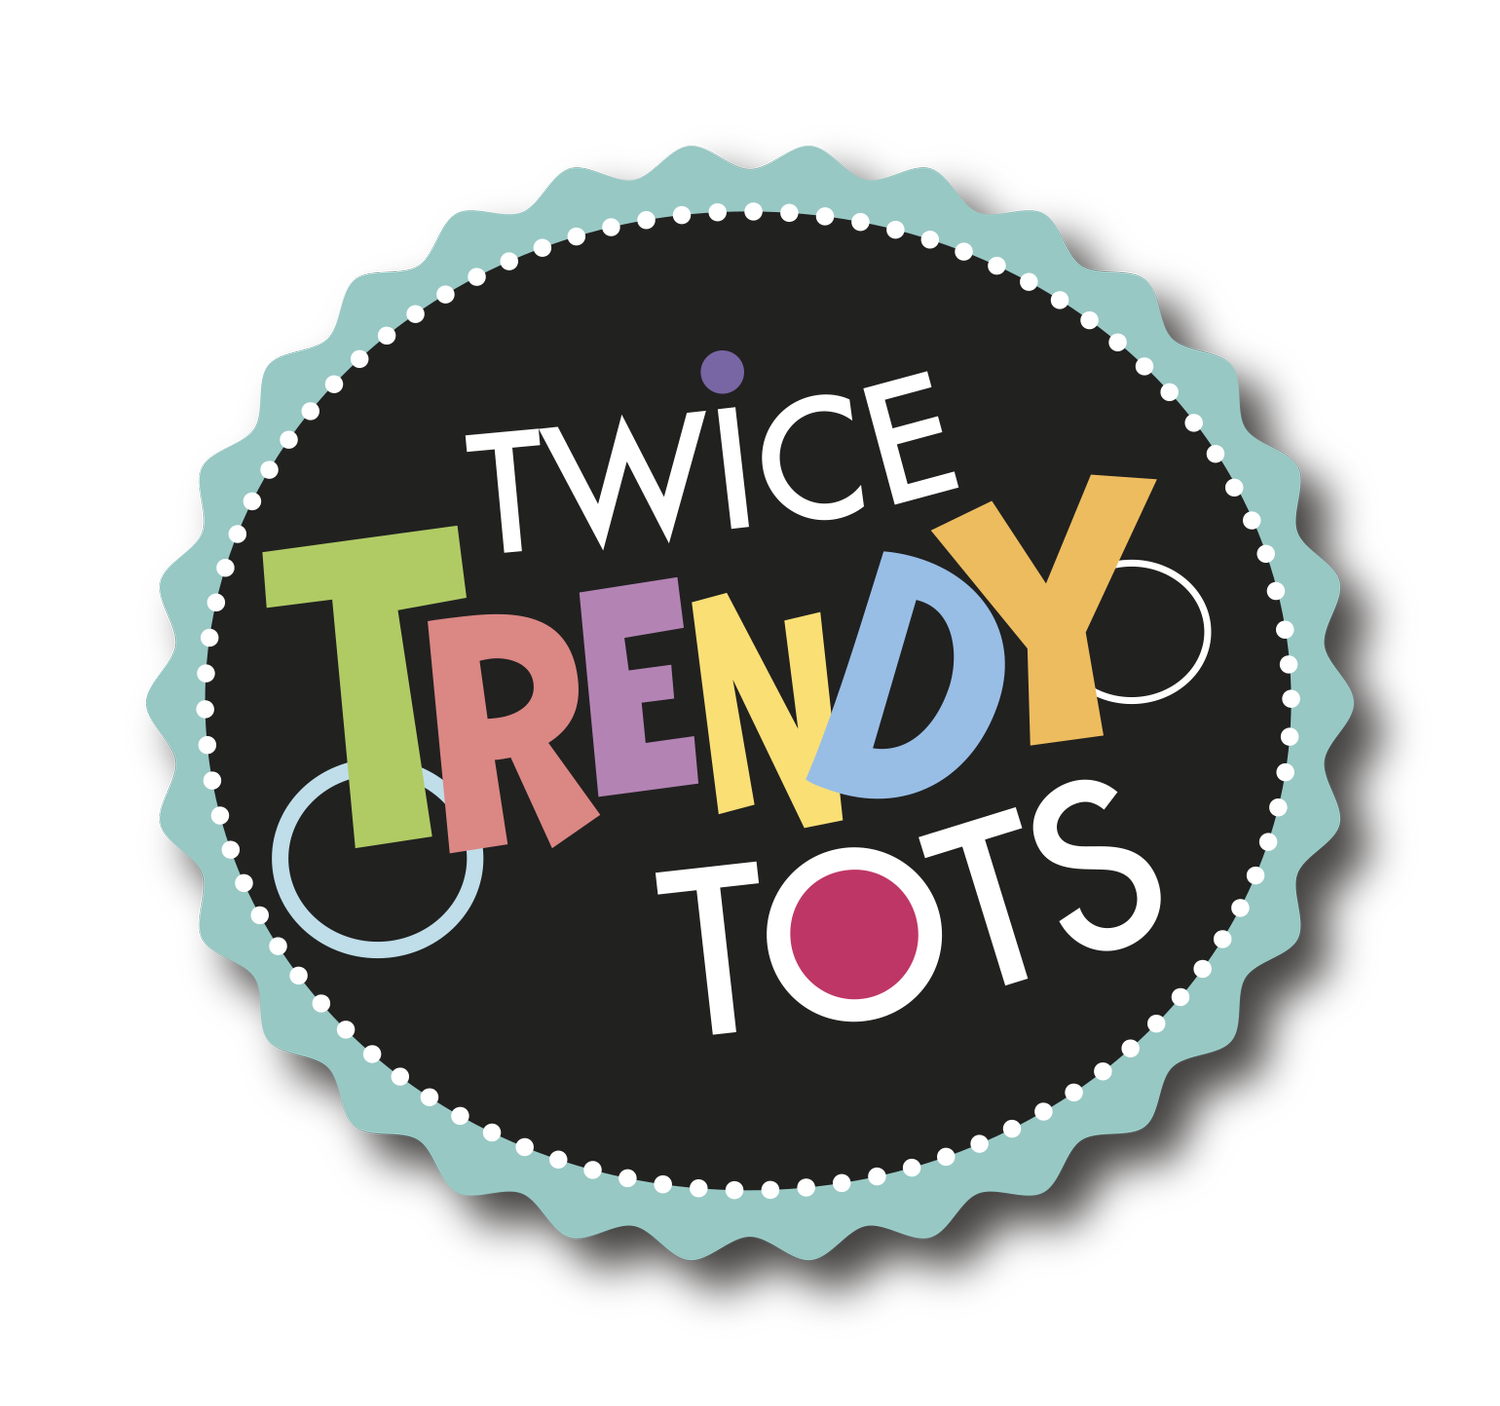 Twice Trendy Tots